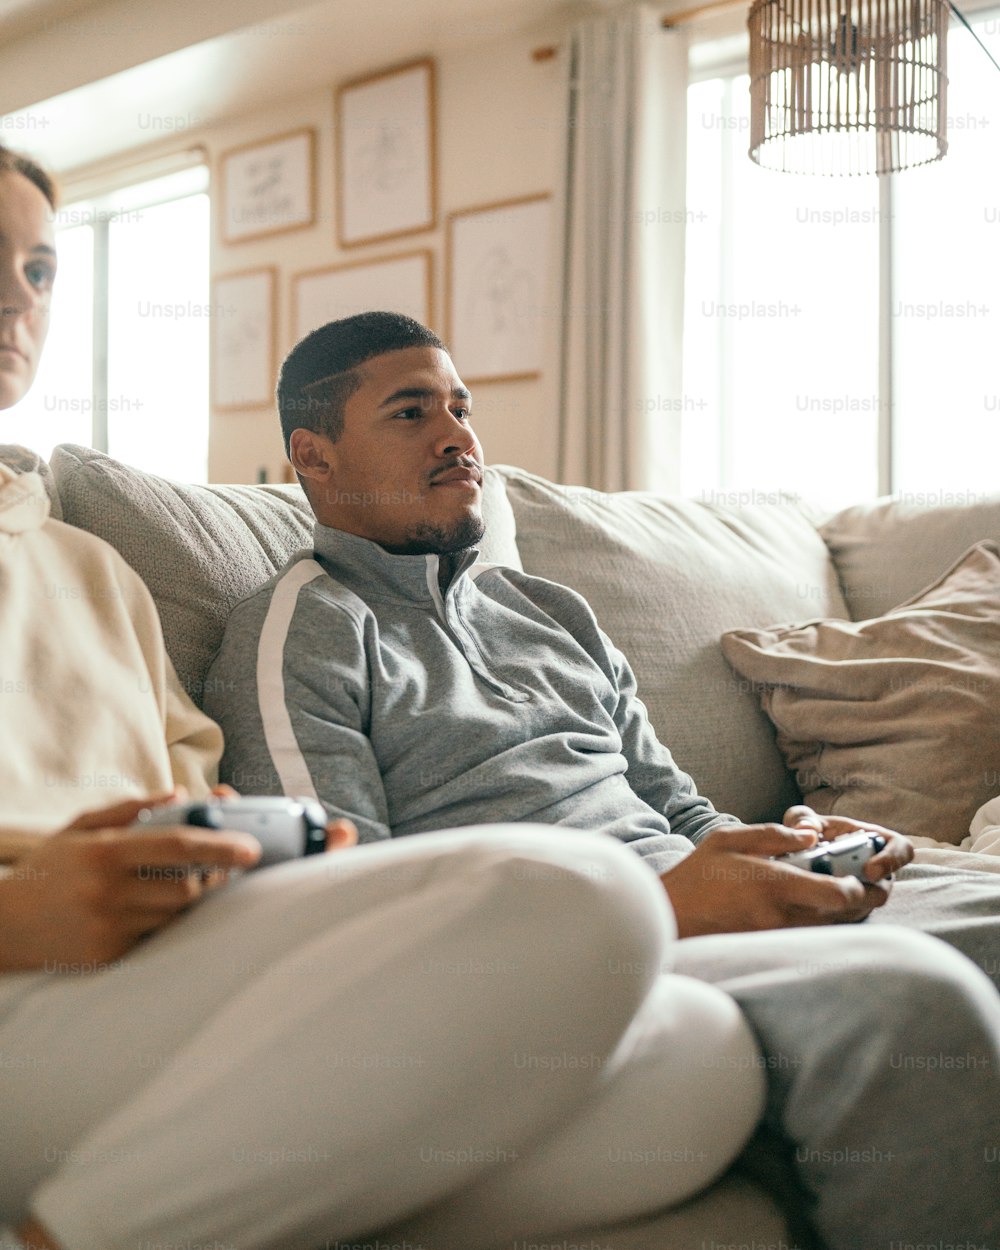 Zwei Männer, die auf einer Couch sitzen und Videospiele spielen